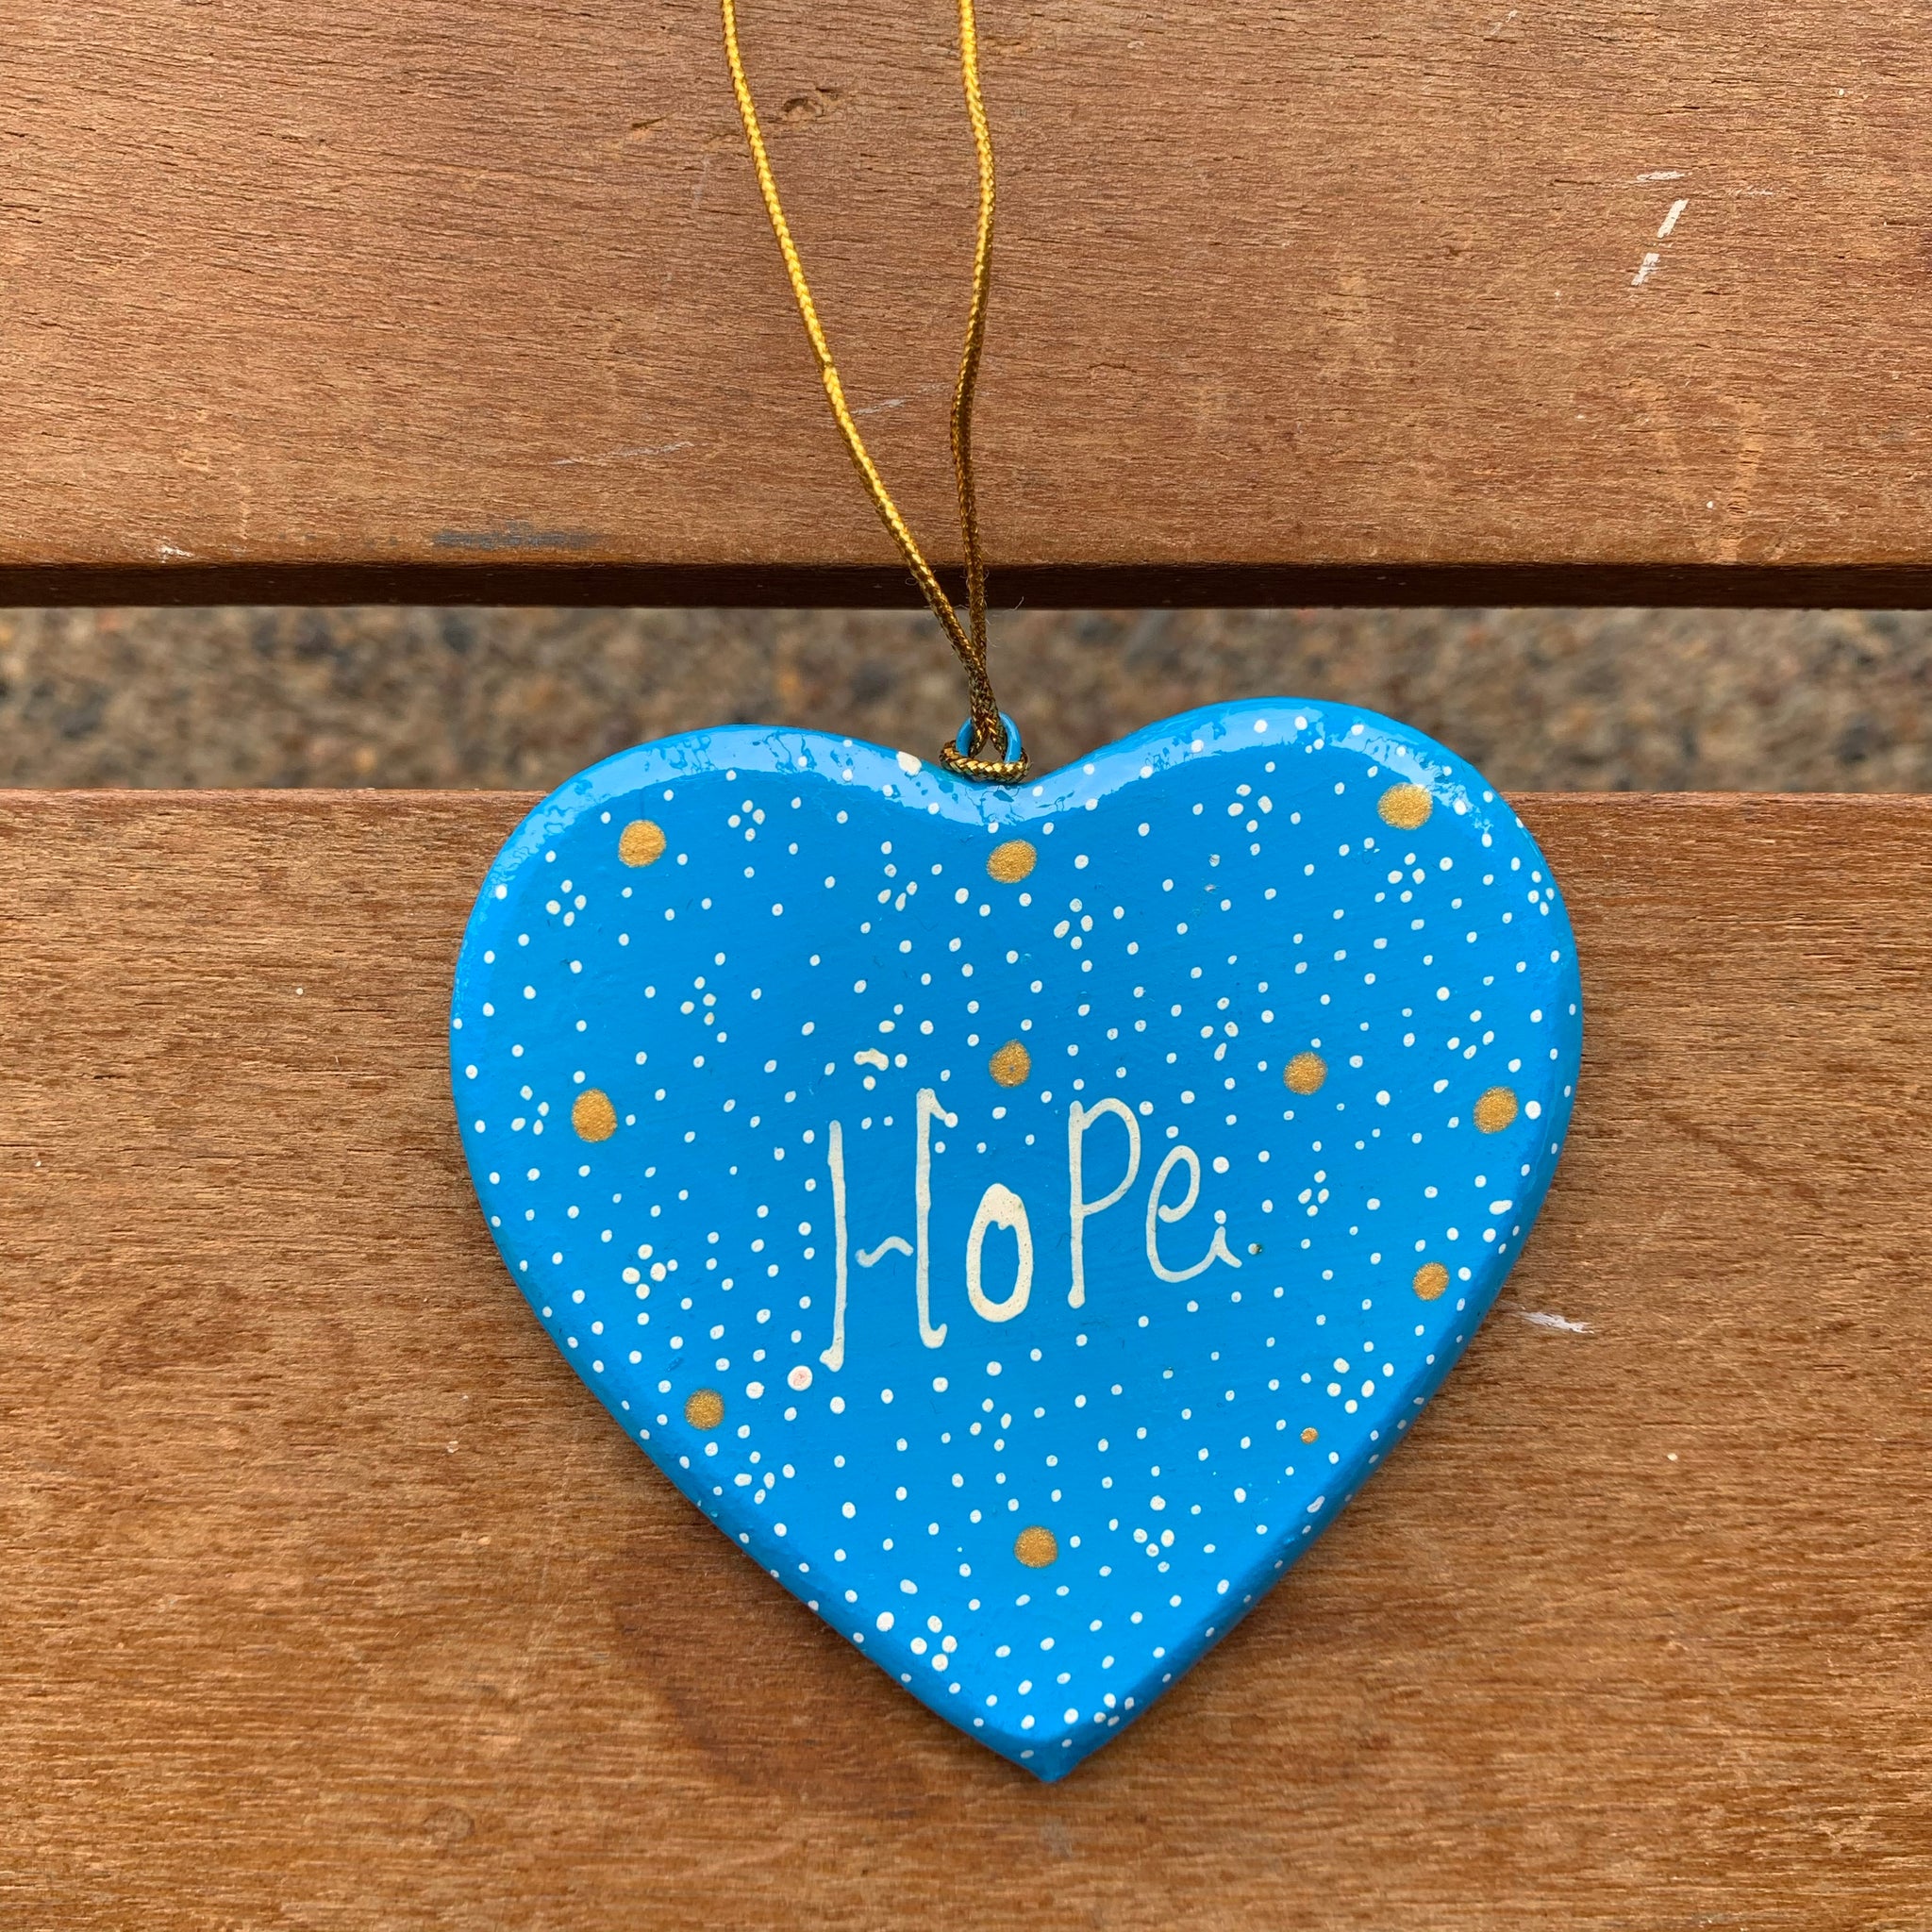 Flat Wooden Blue Heart - "Hope"